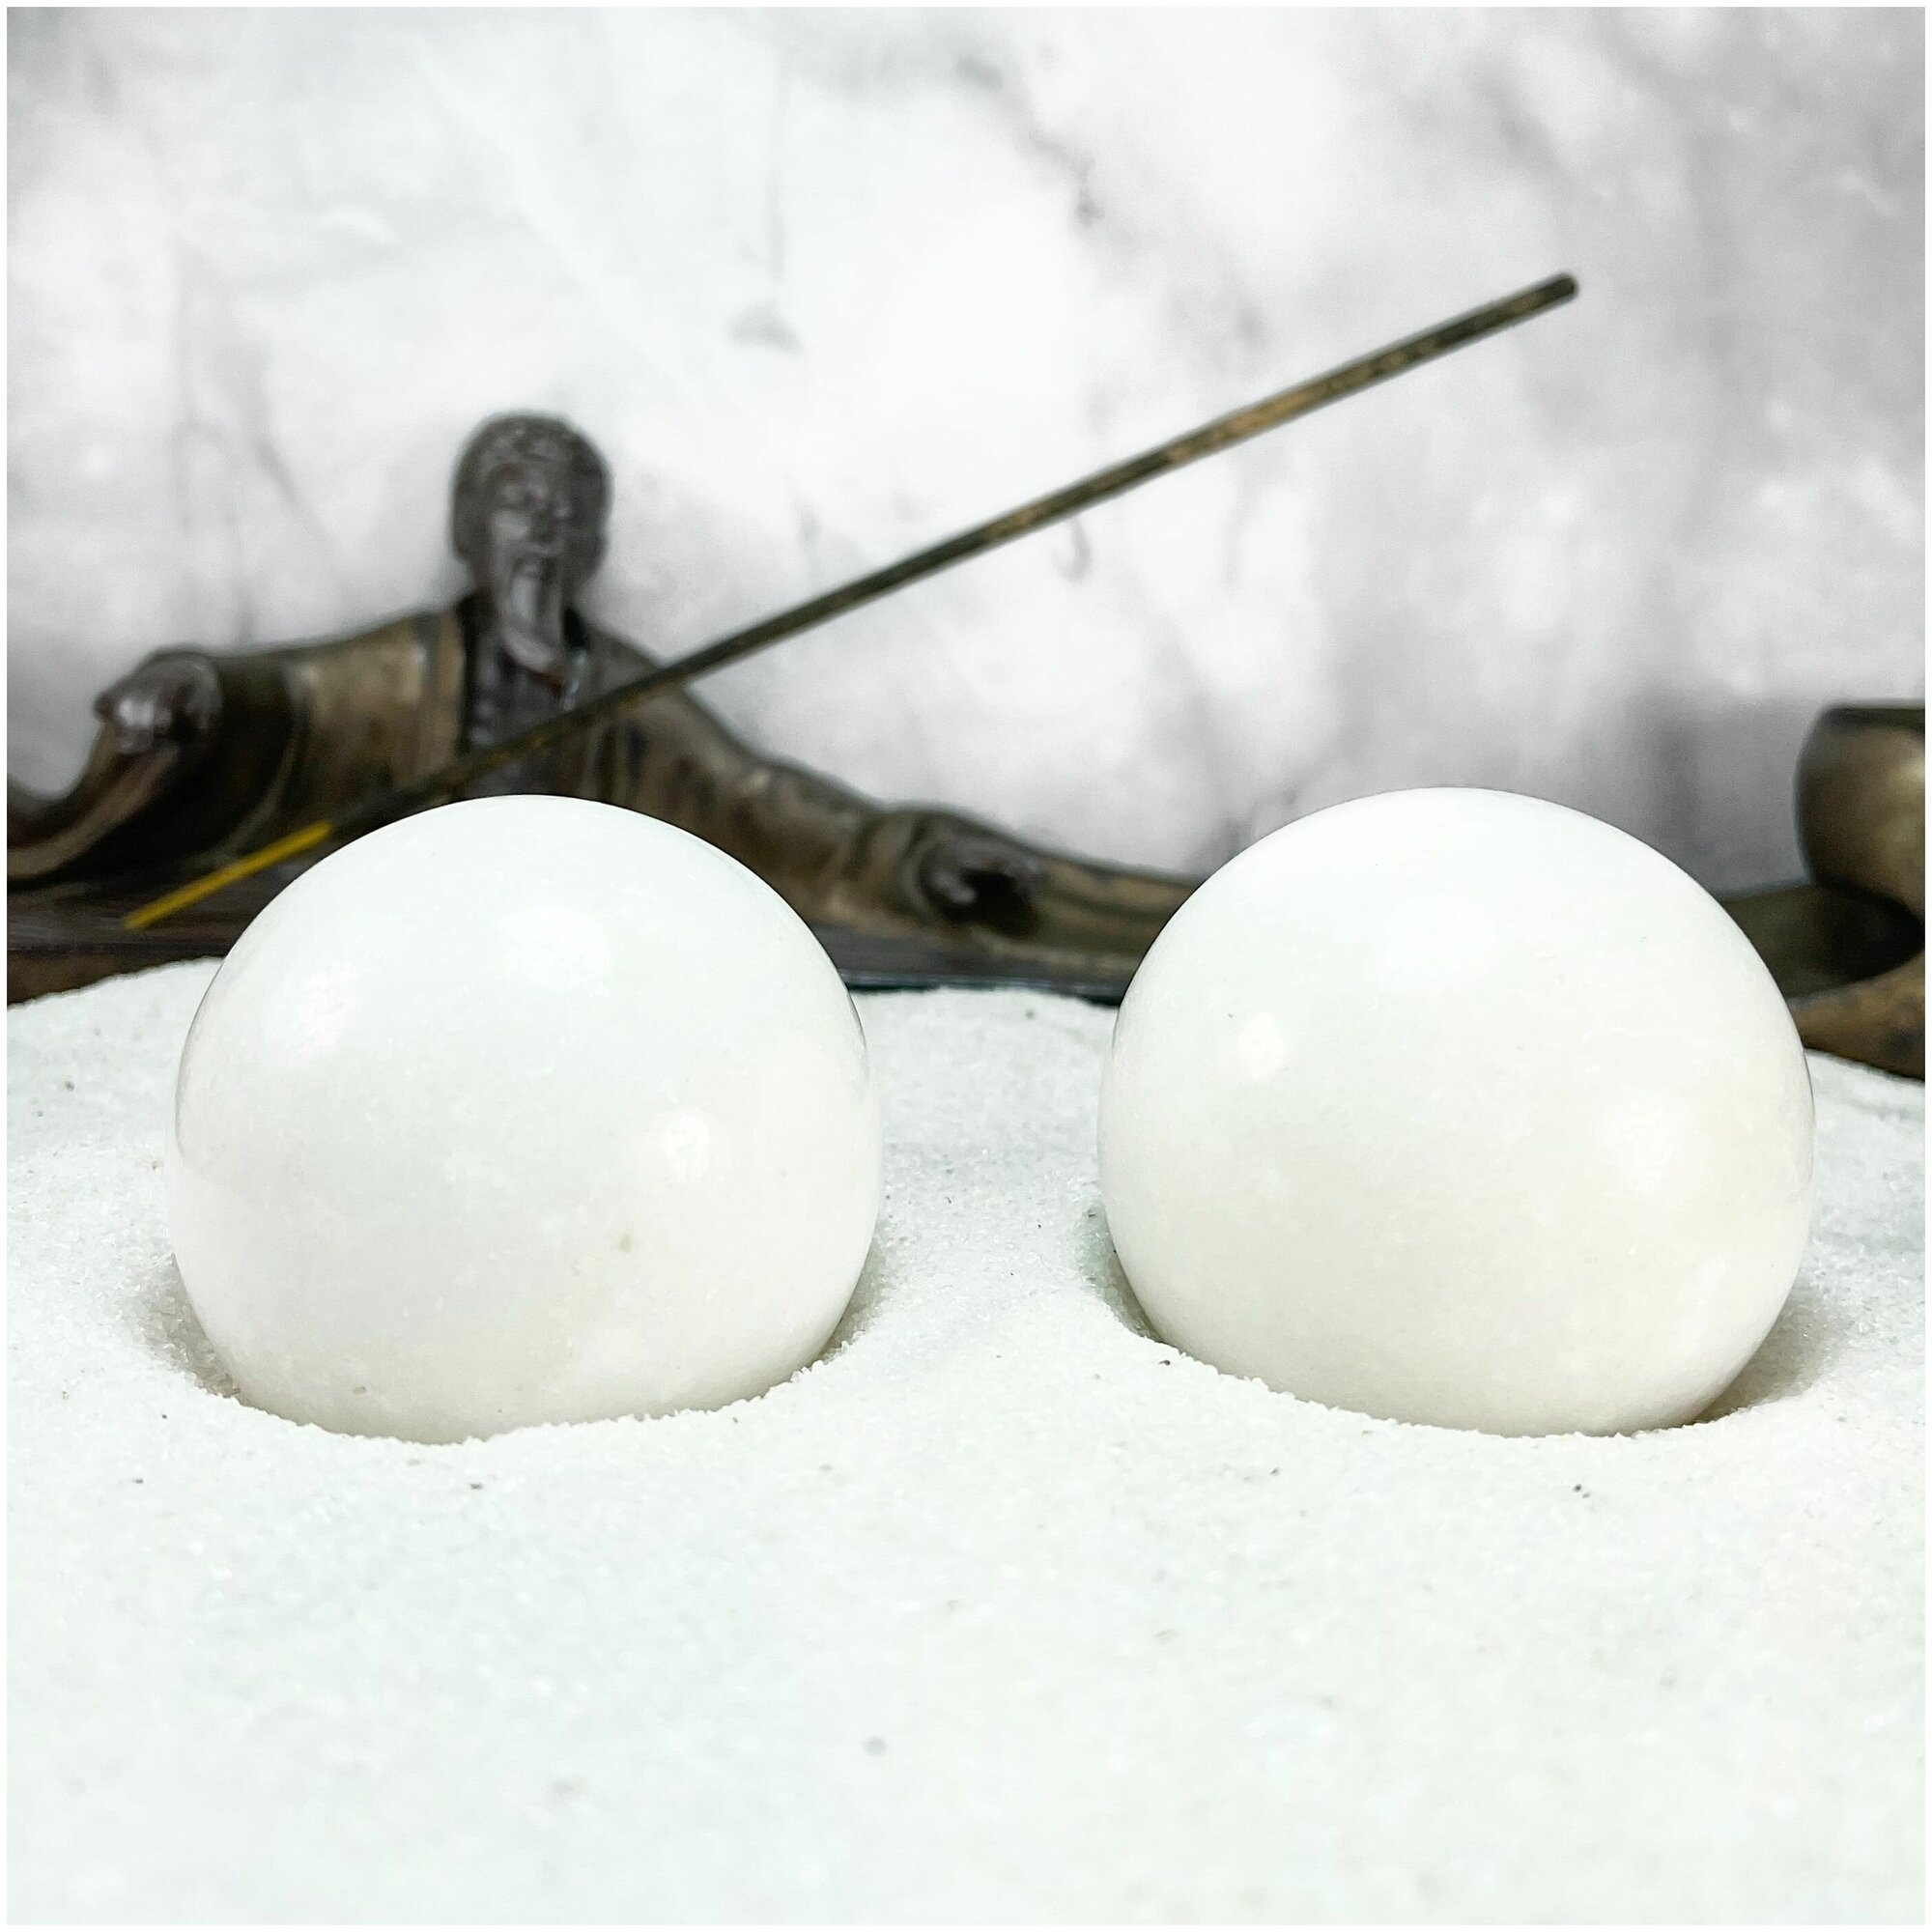 Массажные шары здоровья Баодинг, из натурального камня, мраморная крошка, 2 шт, диаметр 48 мм, белые, в подарочной коробке